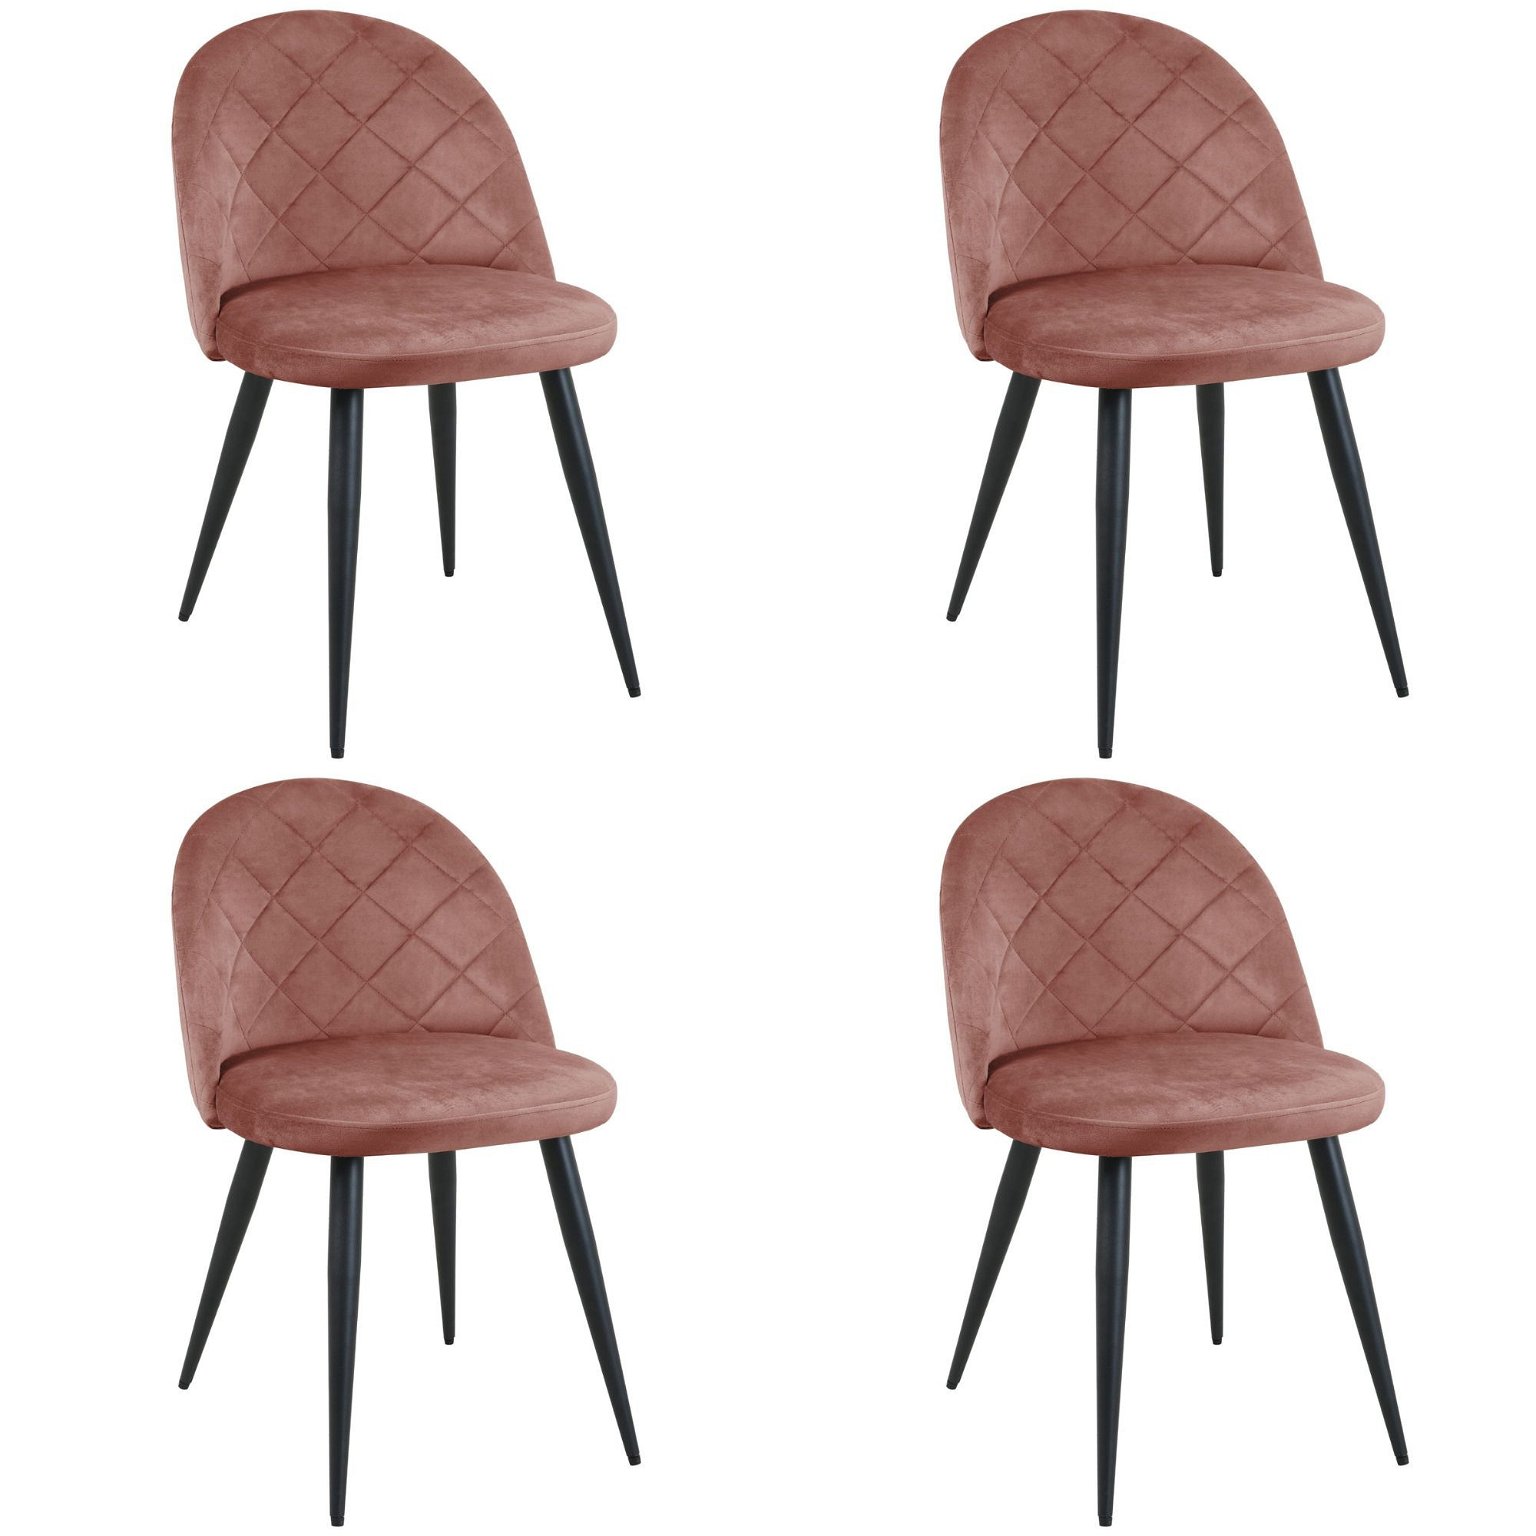 4-ių kėdžių komplektas SJ.077, rožinė - 1